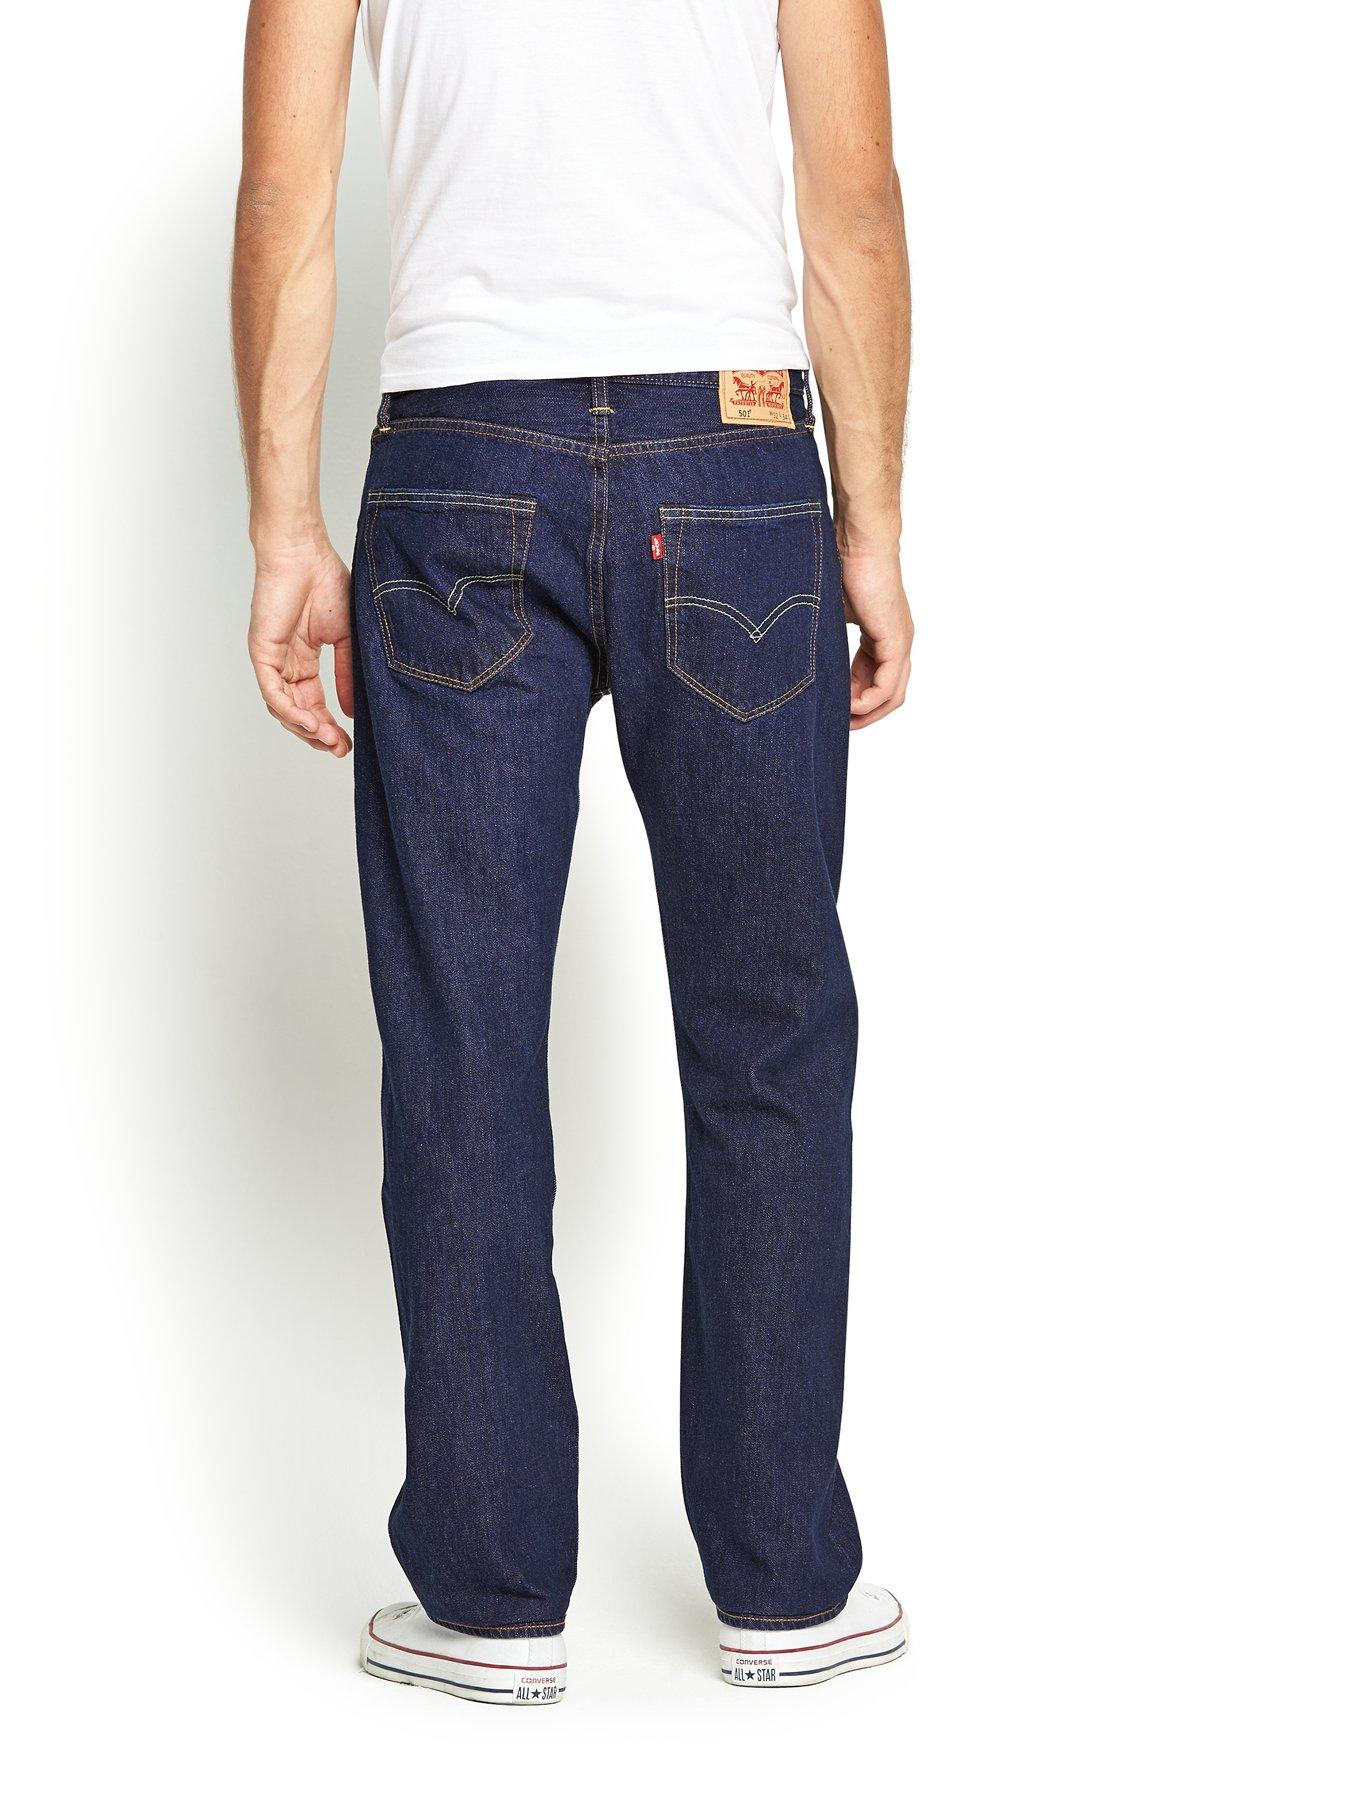 Levi's 501 Original Fit Jeans - One 